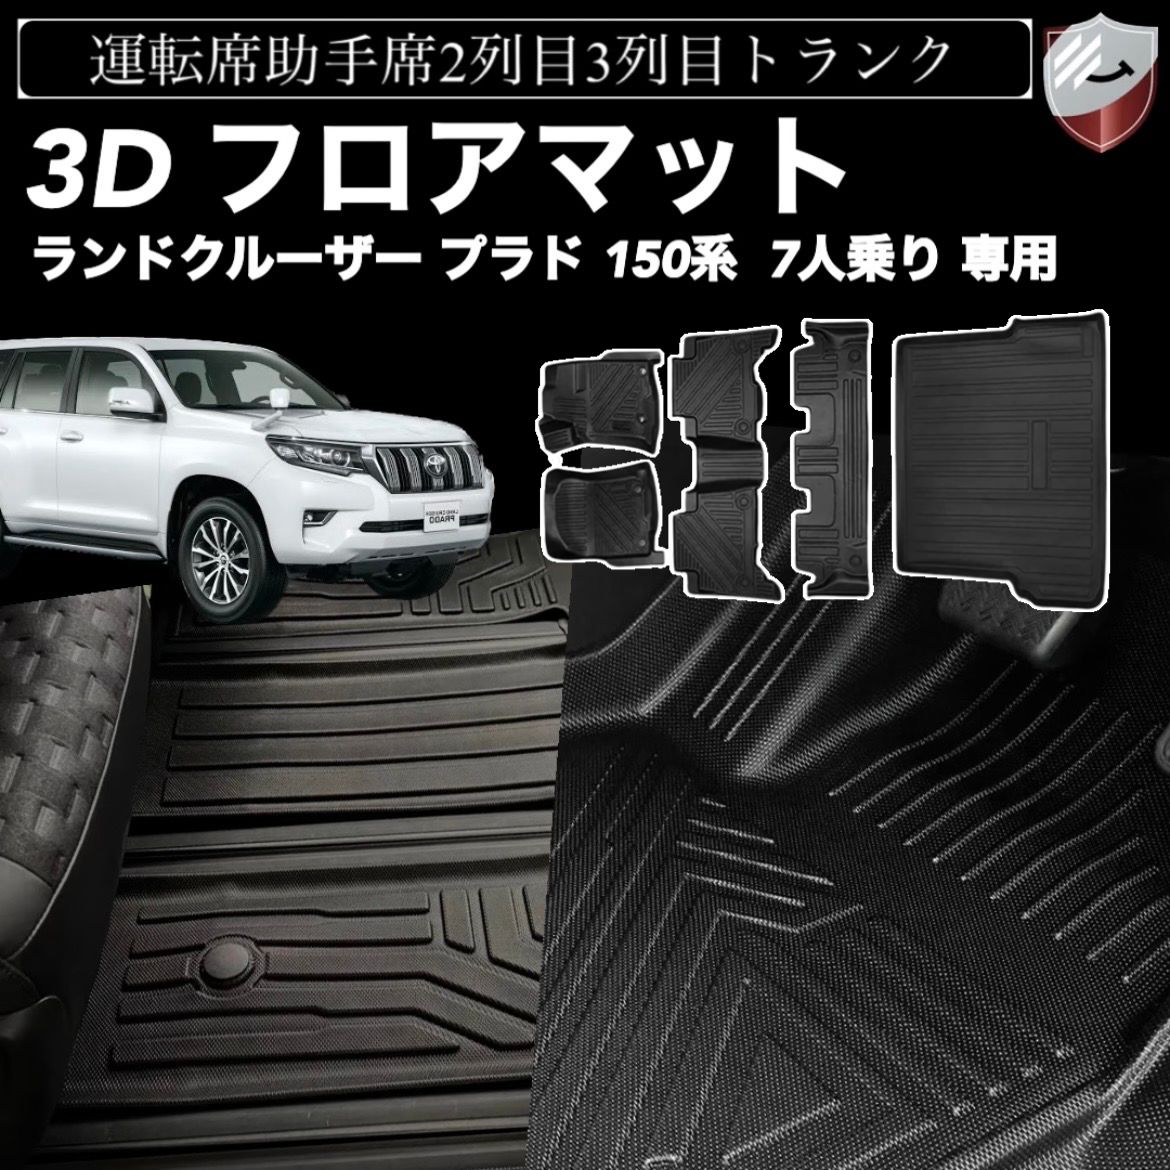 トヨタ ランドクルーザー プラド 150系 7人乗り に適用 3Dフロアマット